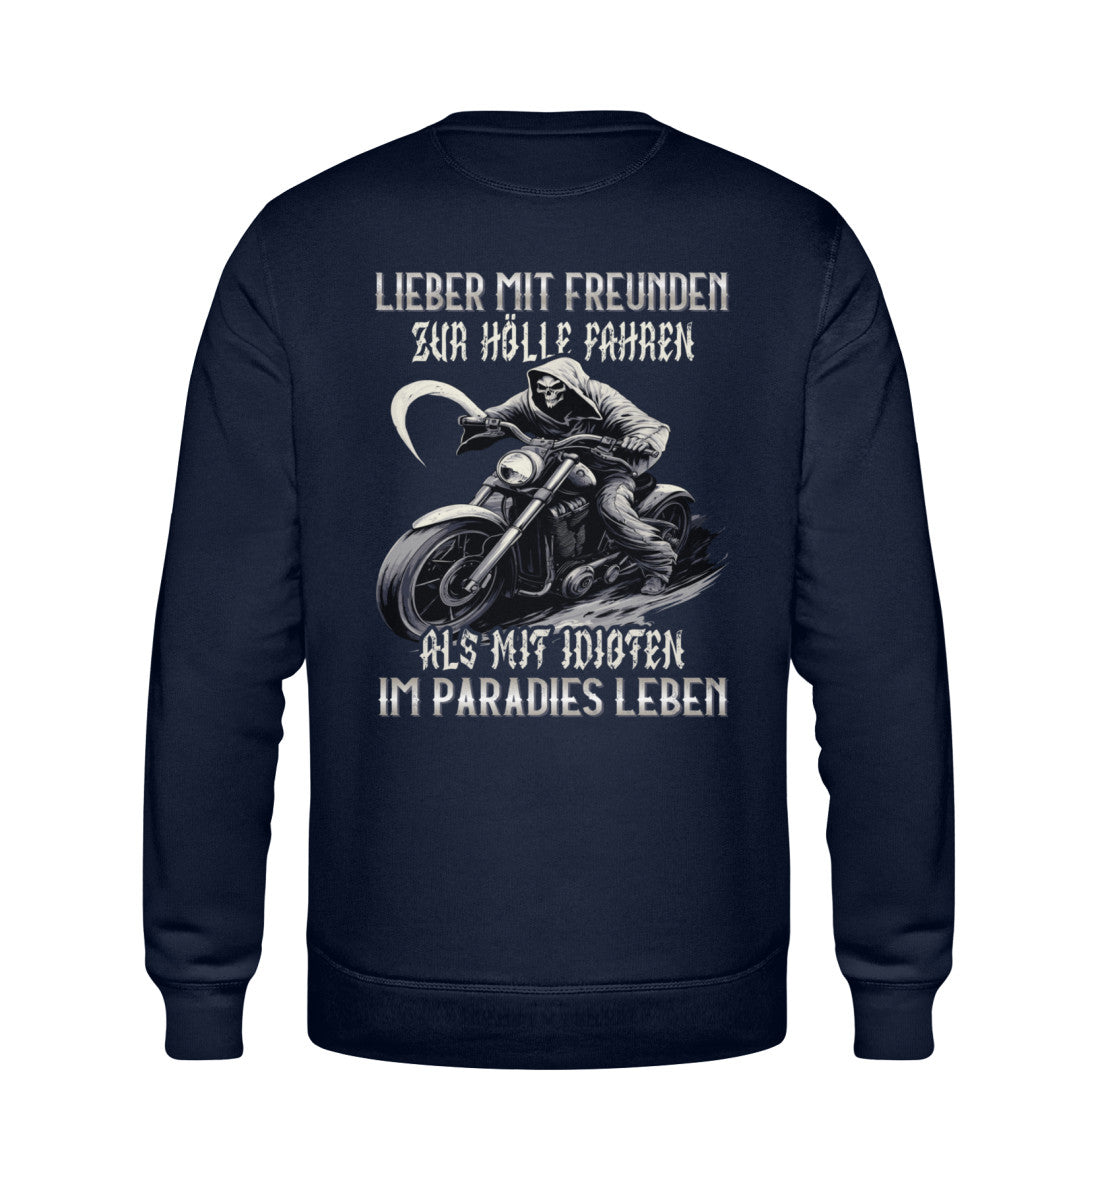 Ein Biker Sweatshirt für Motorradfahrer von Wingbikers mit dem Aufdruck, Lieber mit Freunden zur Hölle fahren, als mit Idioten im Paradies Leben, als Back Print - in navy blau.